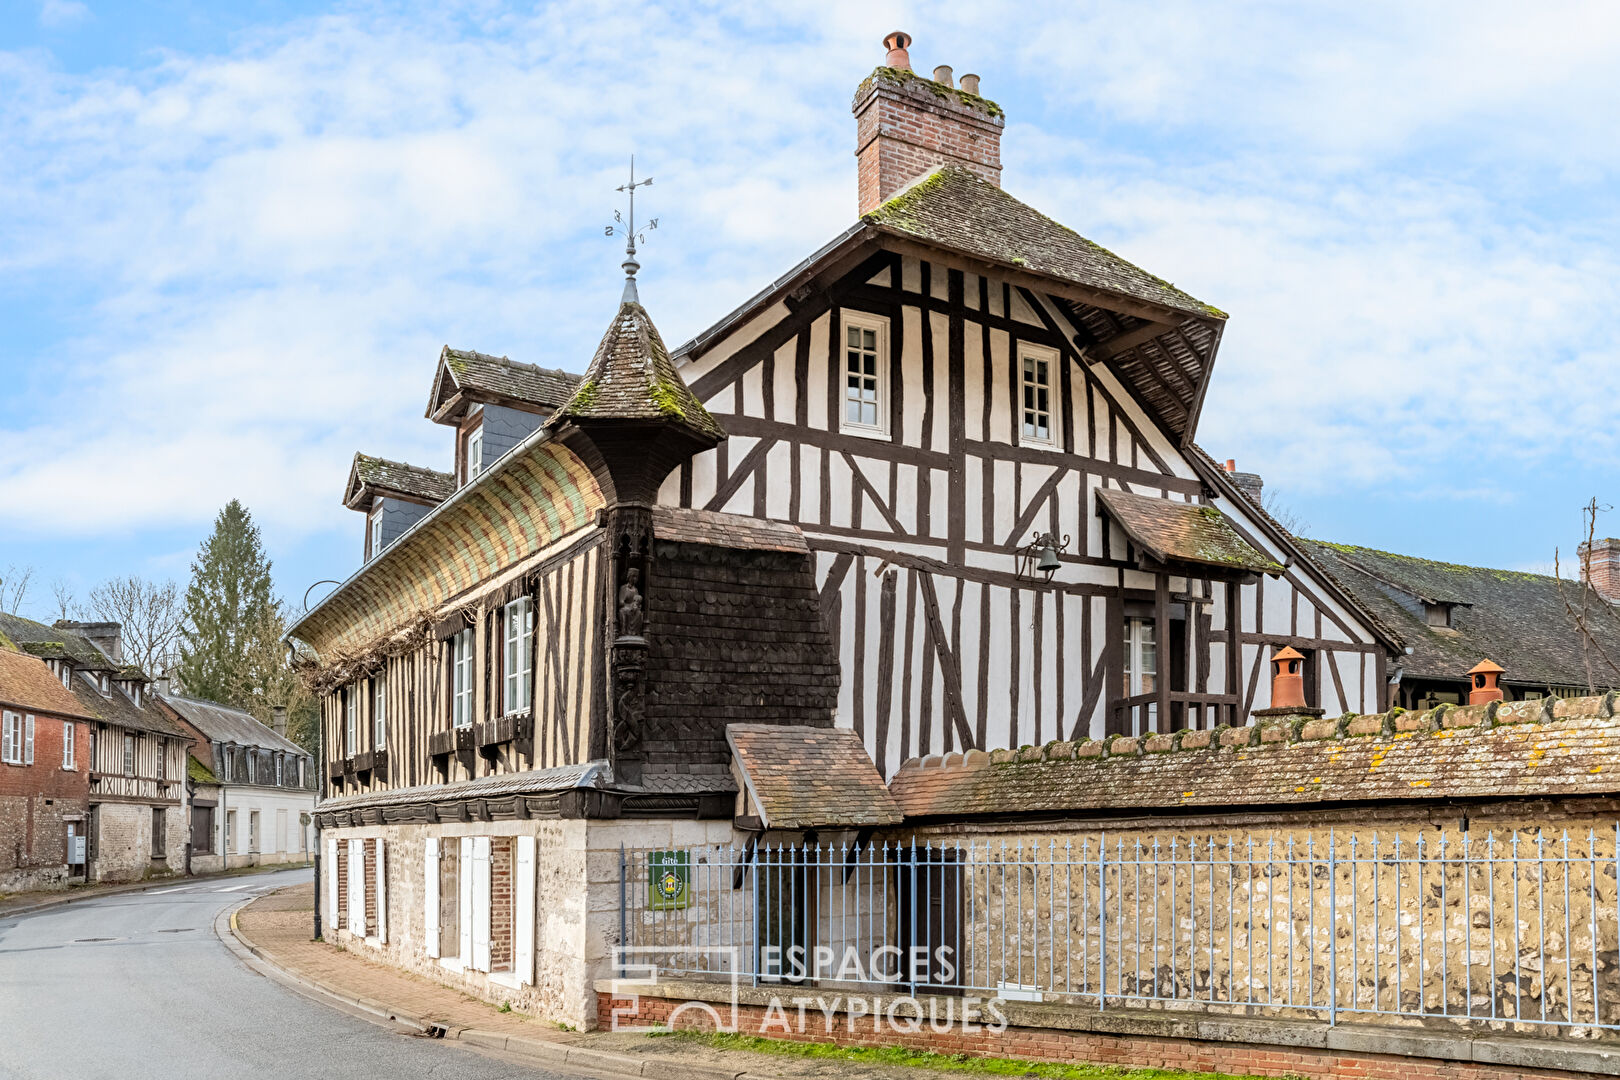 Maison normande du 16ème siècle, repaire secret de Sacha Guitry